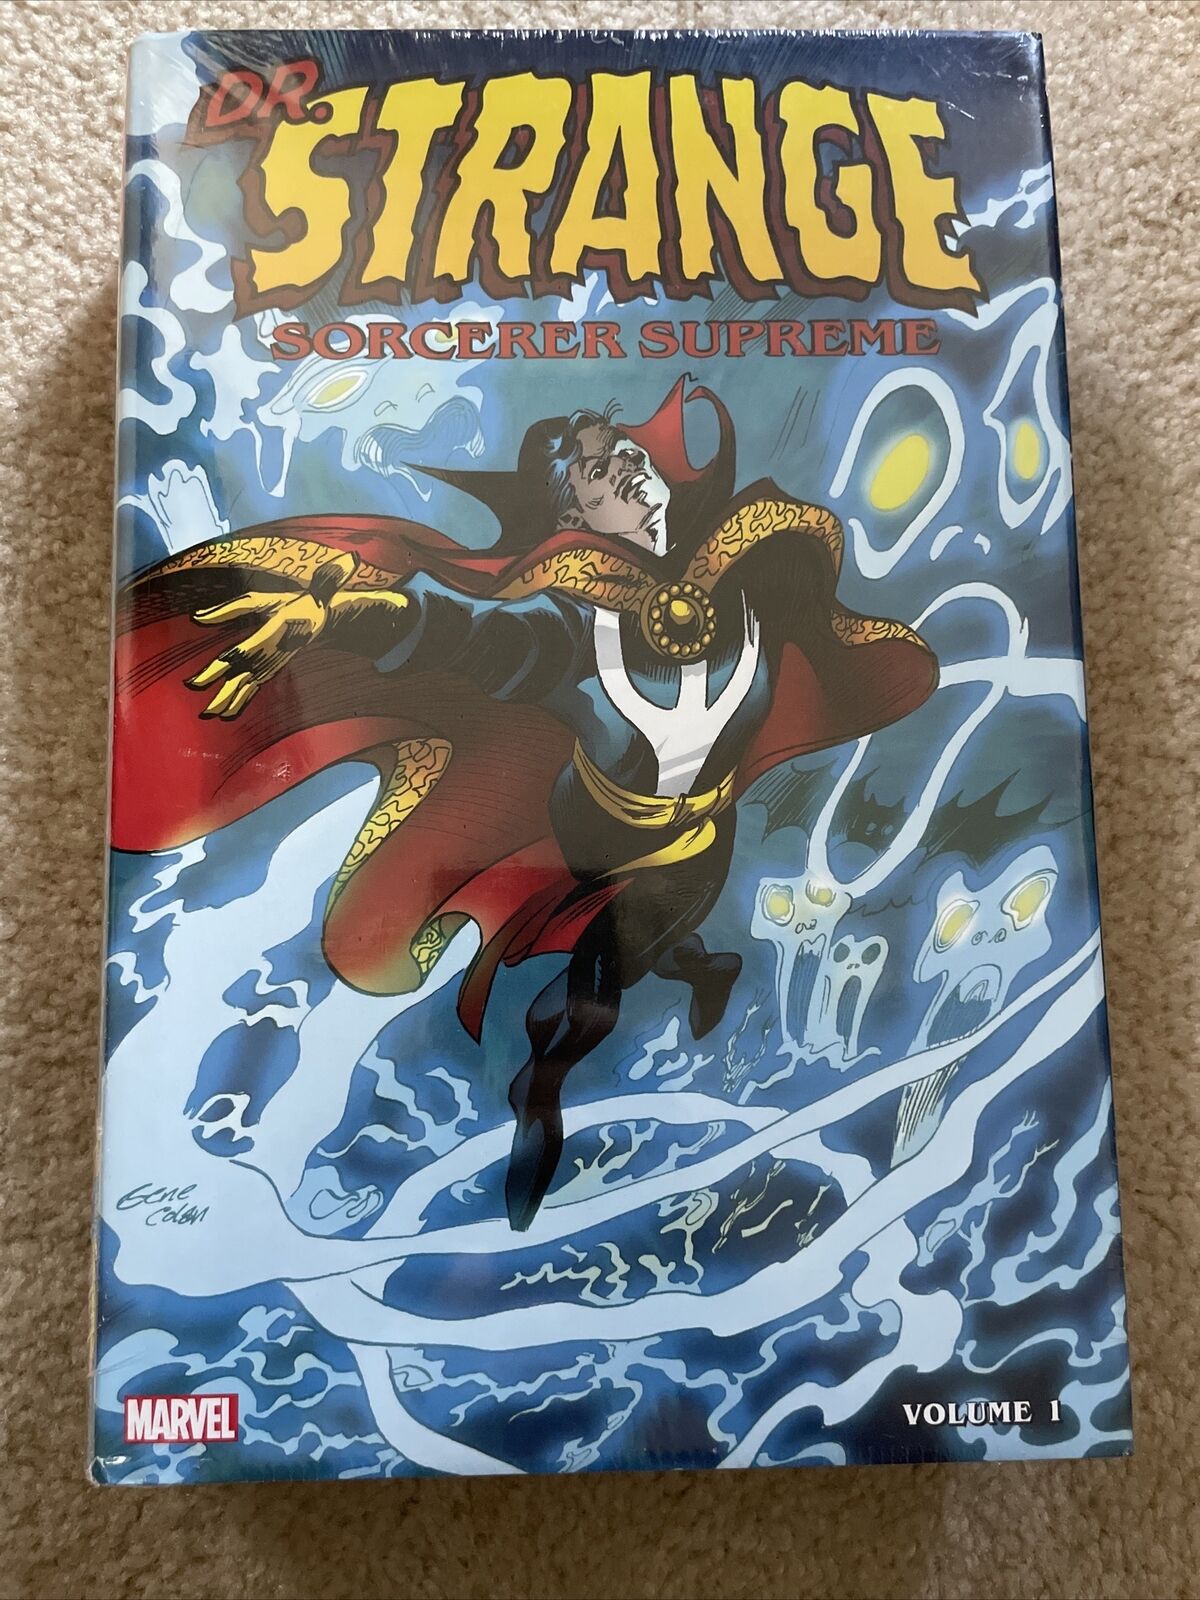 Doctor Strange Sorcerer Supreme Volume 1 #1-40 Marvel Comics Omnibus New Sealed